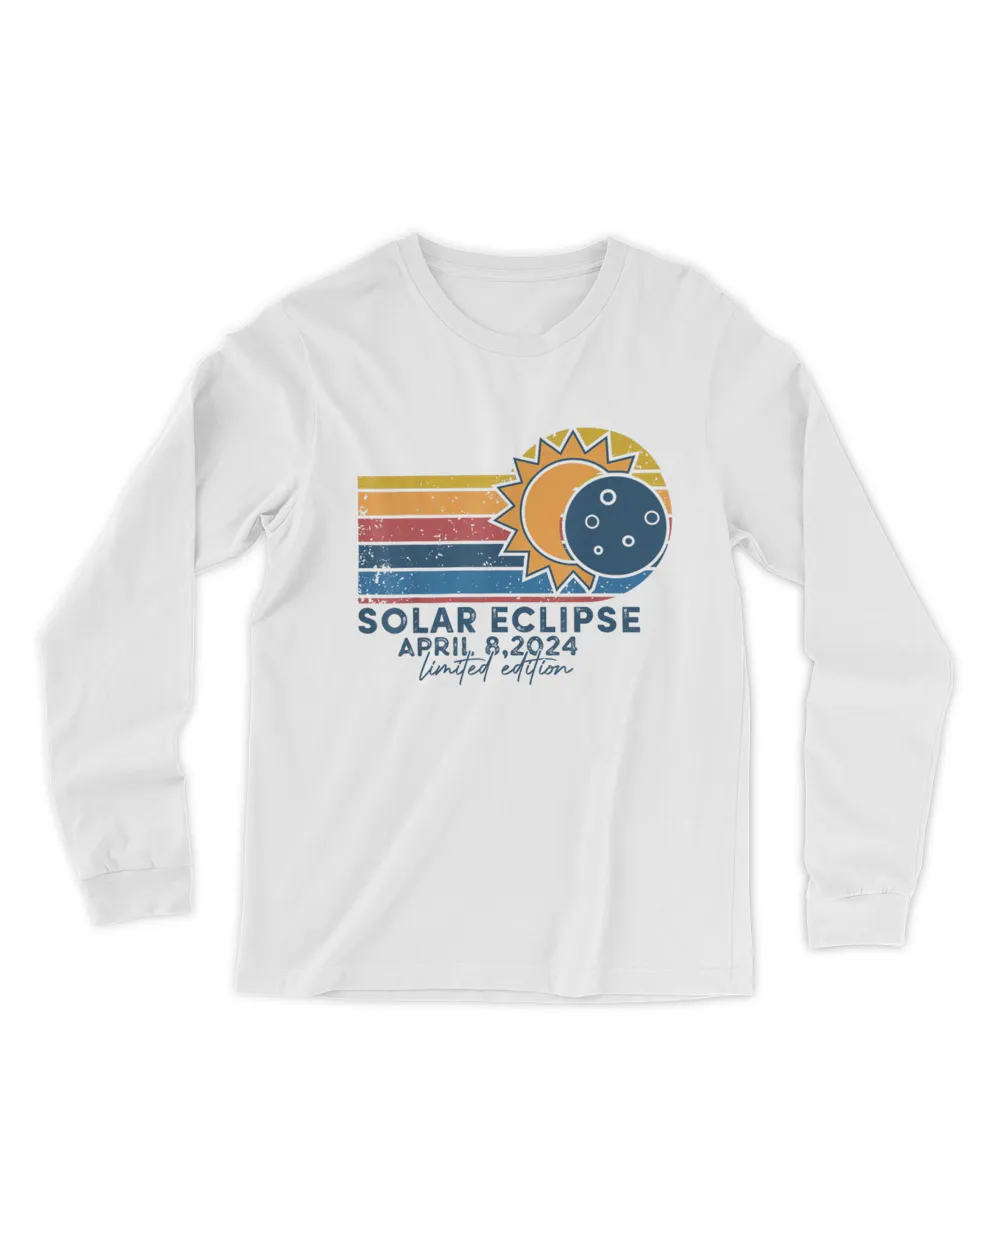 Solar Eclipse Total Eclipse April 8 2024 T-Shirt